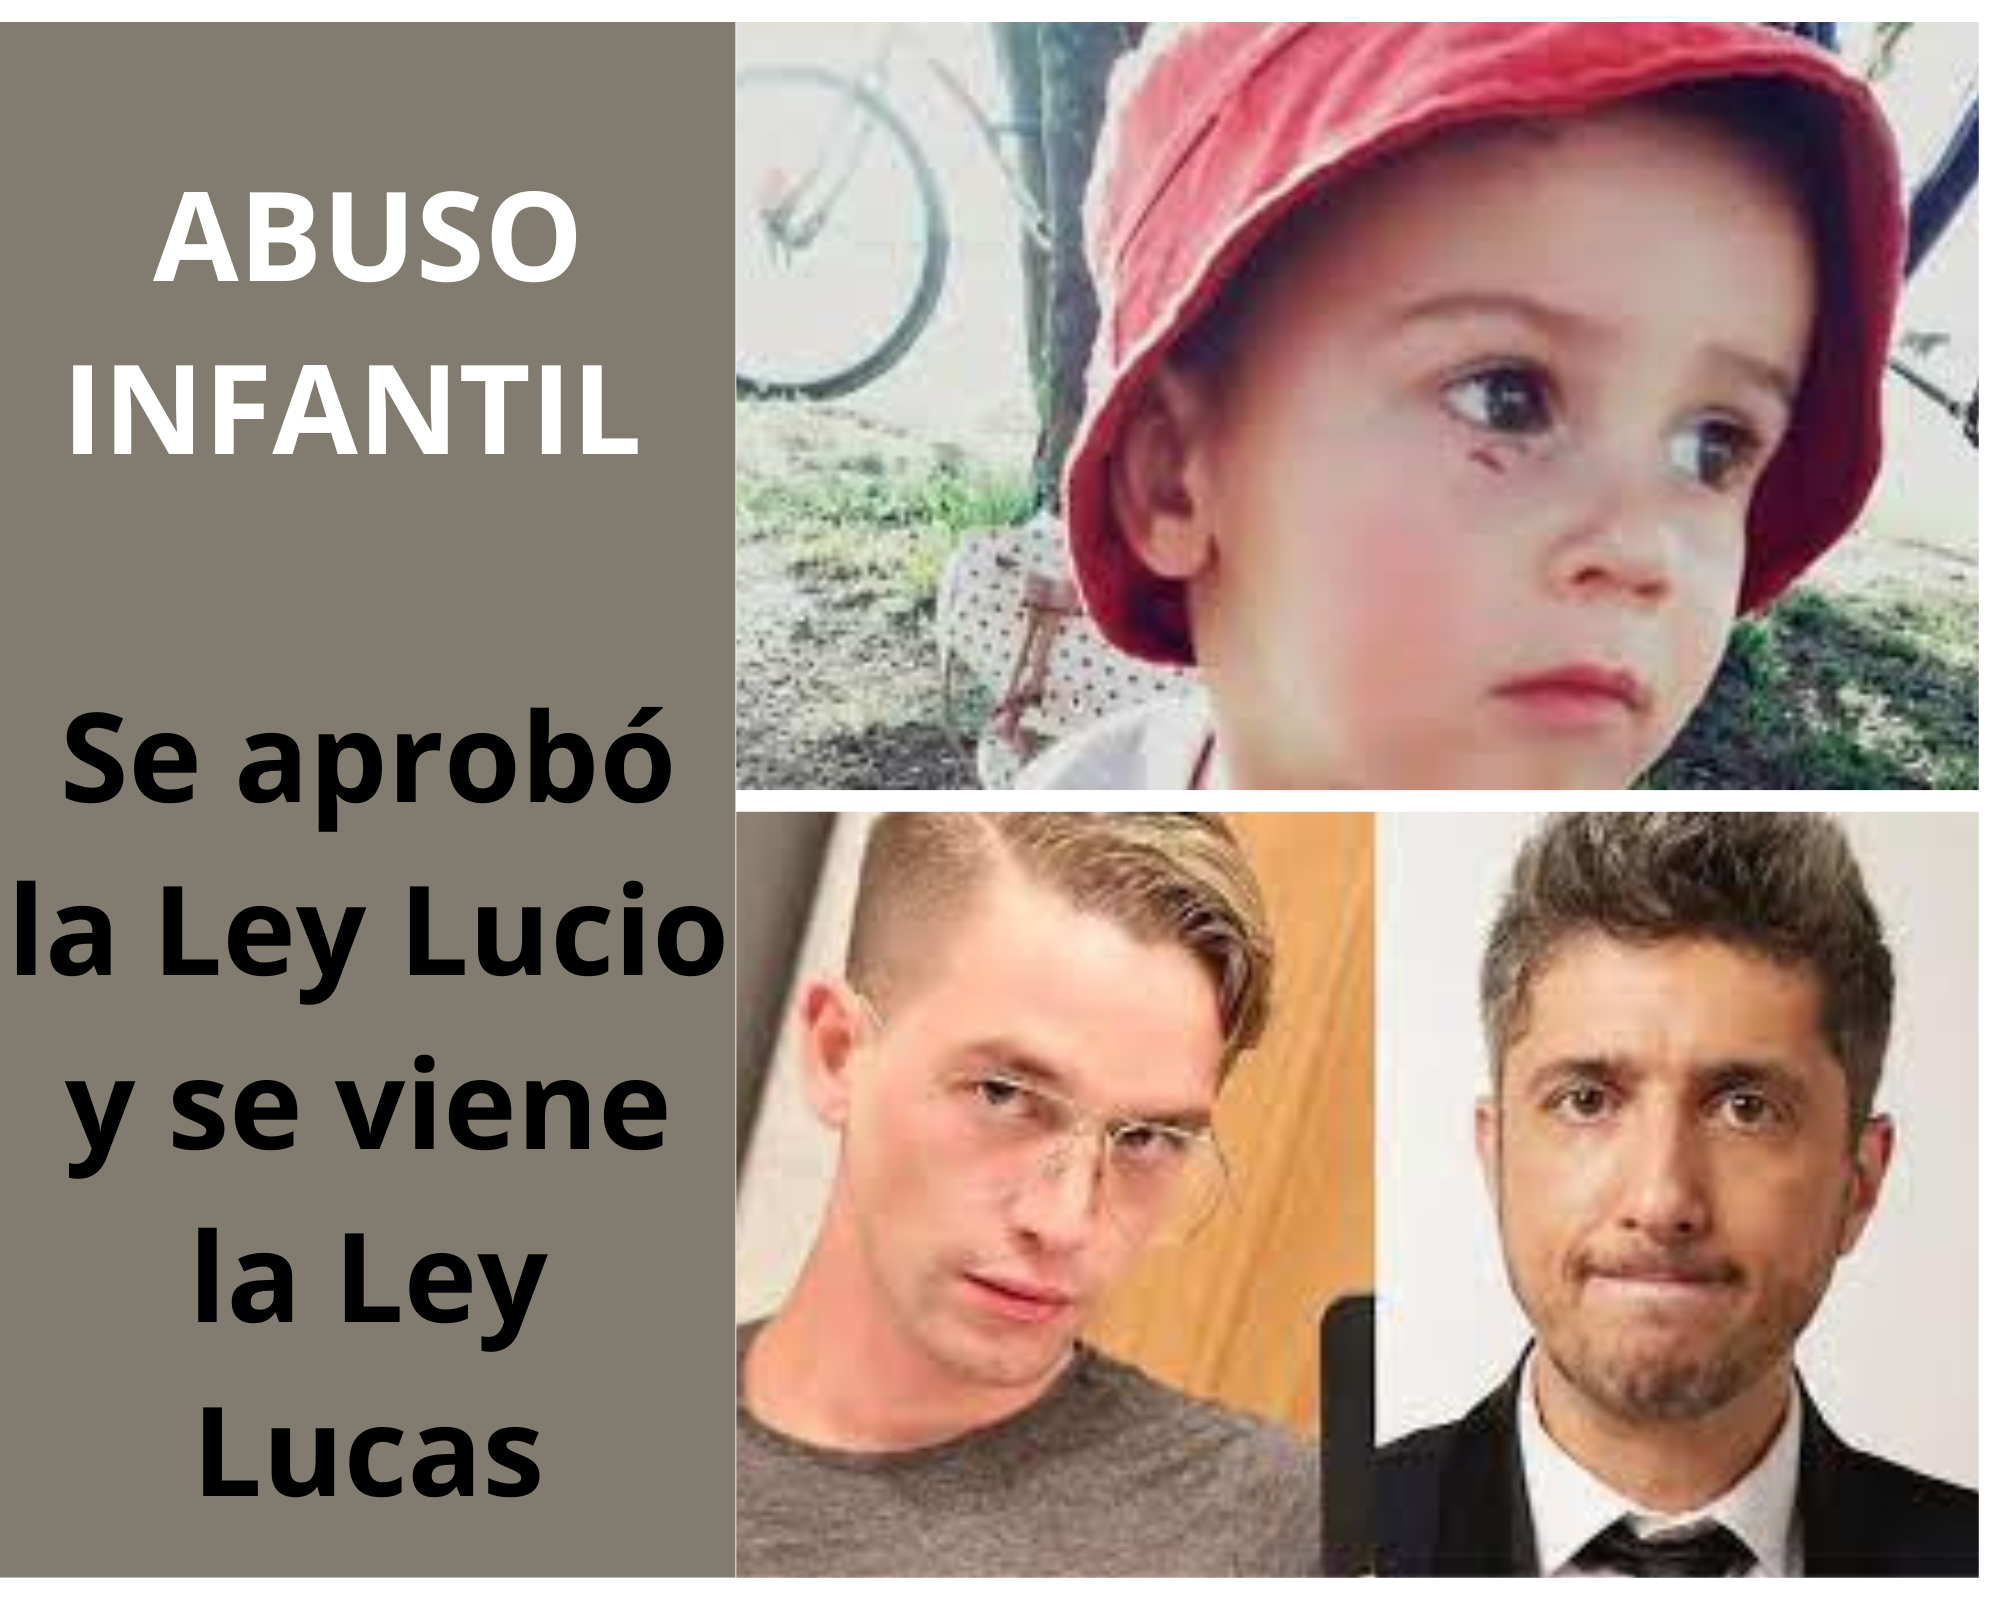 Se aprobó la Ley Lucio y se viene la Ley Lucas: Imprescriptibilidad de las causas de Abuso Infantil